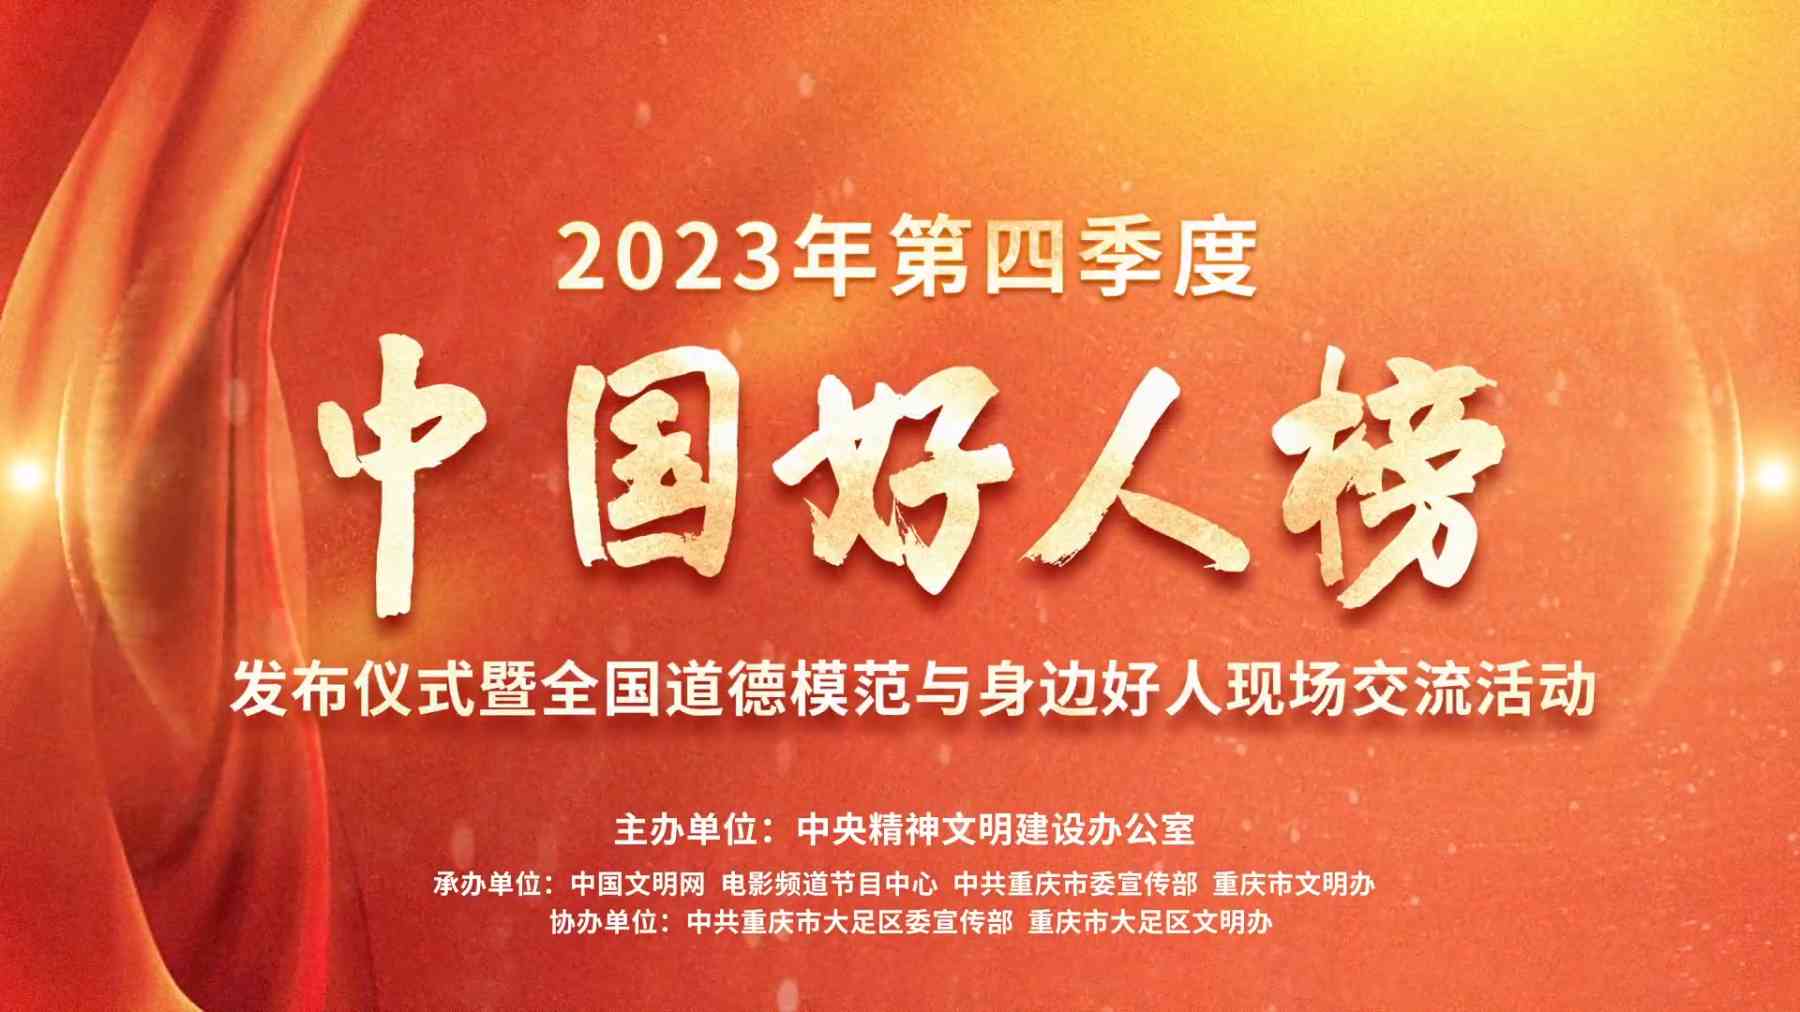 2023年第四季度“中国好人榜”